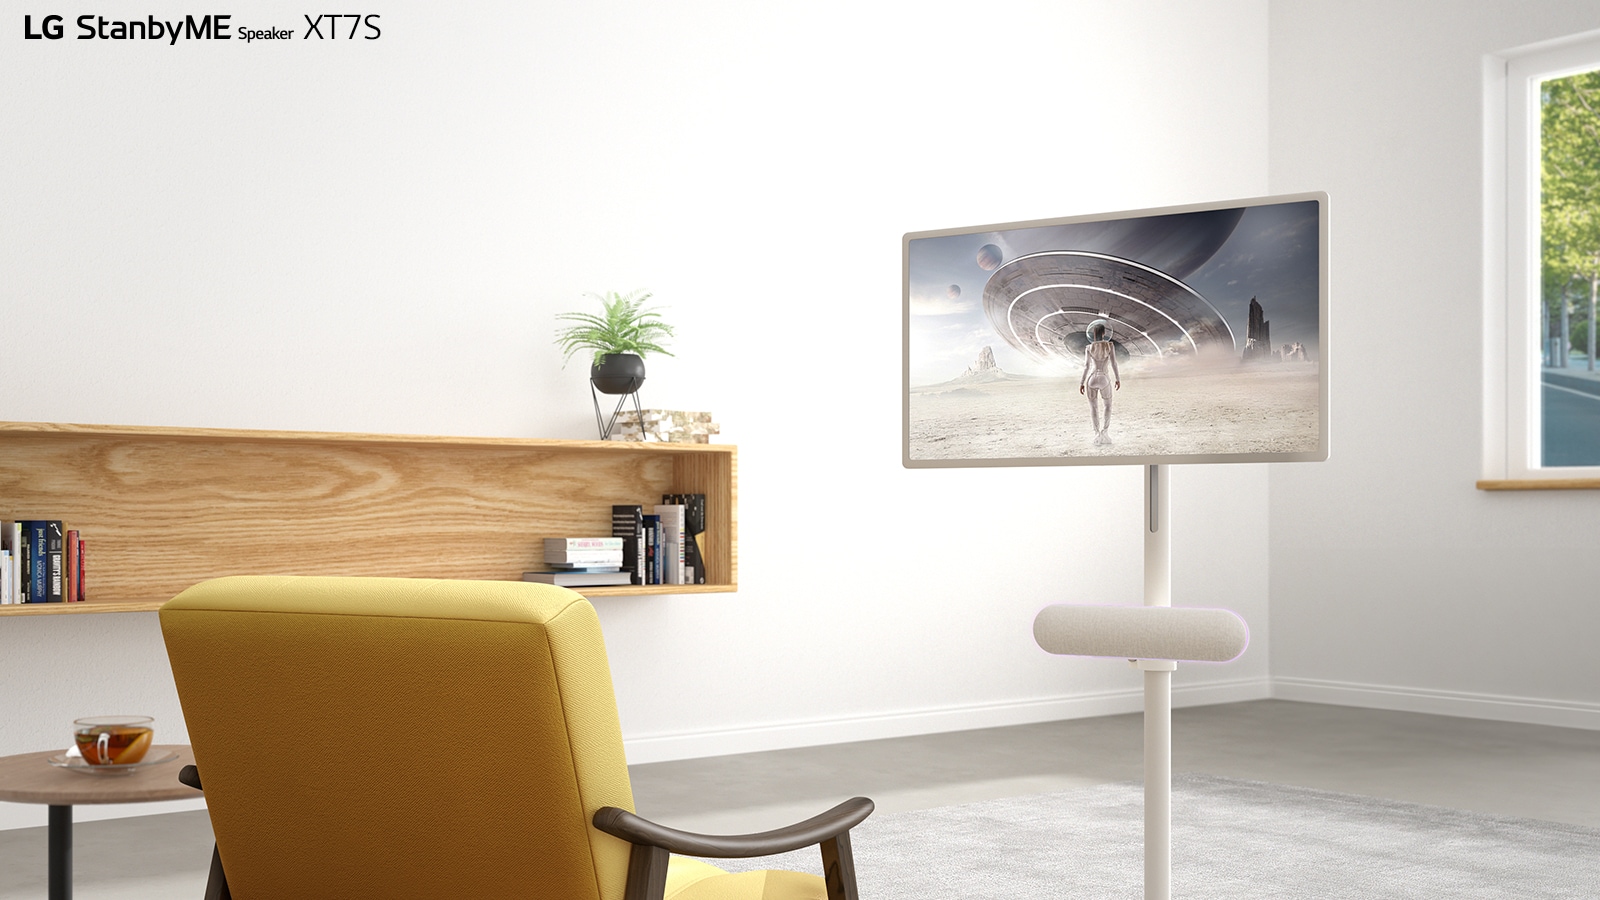 جهاز LG StanbyME موضوع في غرفة المعيشة. توضع LG StanbyME Speaker XT7S تحت الشاشة. تعرض الشاشة فيلم خيال علمي.